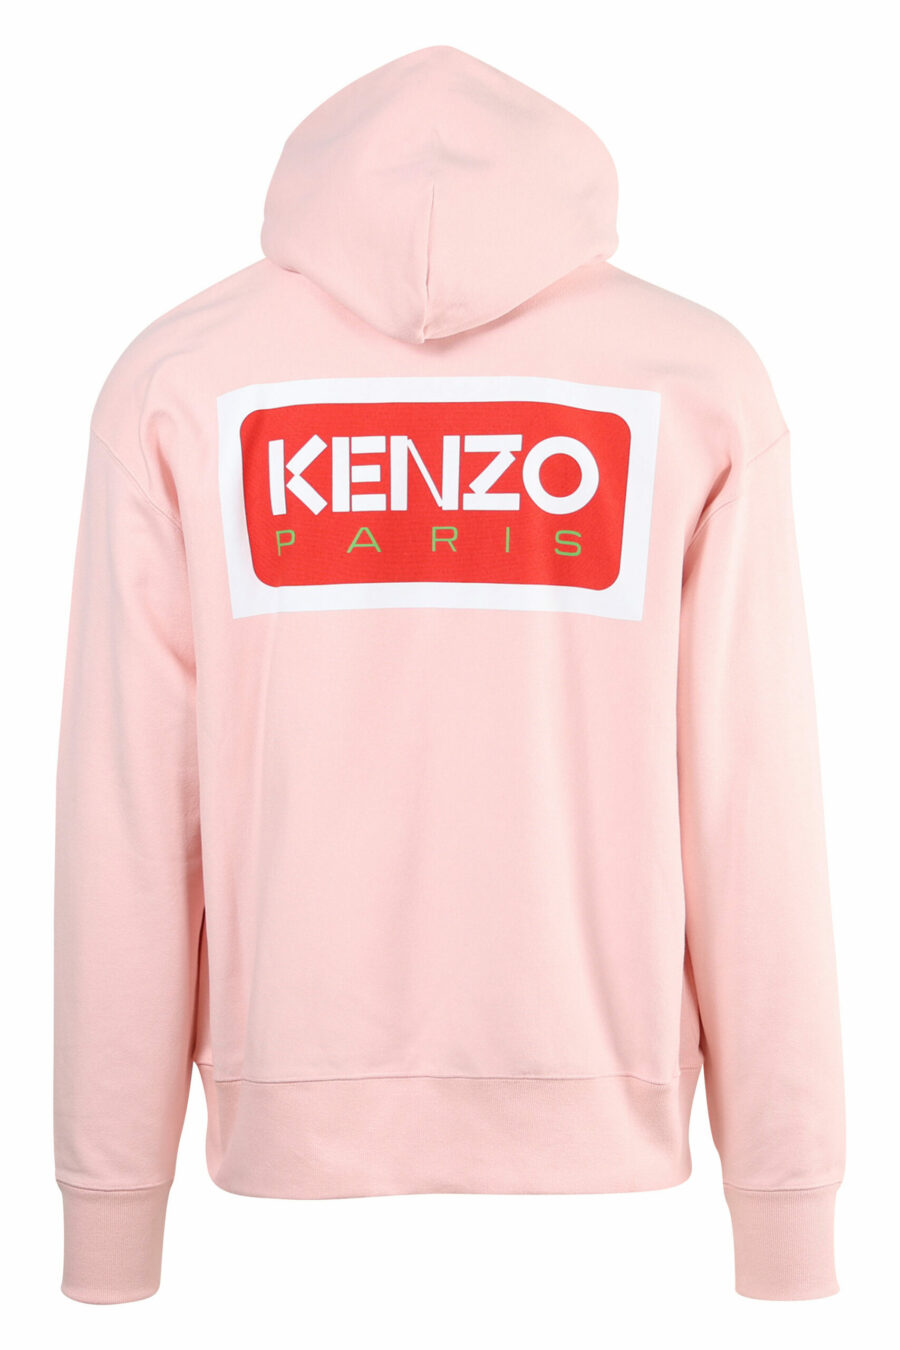 Sudadera rosa con capucha y maxilogo "kenzo paris" detrás - 3612230537439 1 scaled